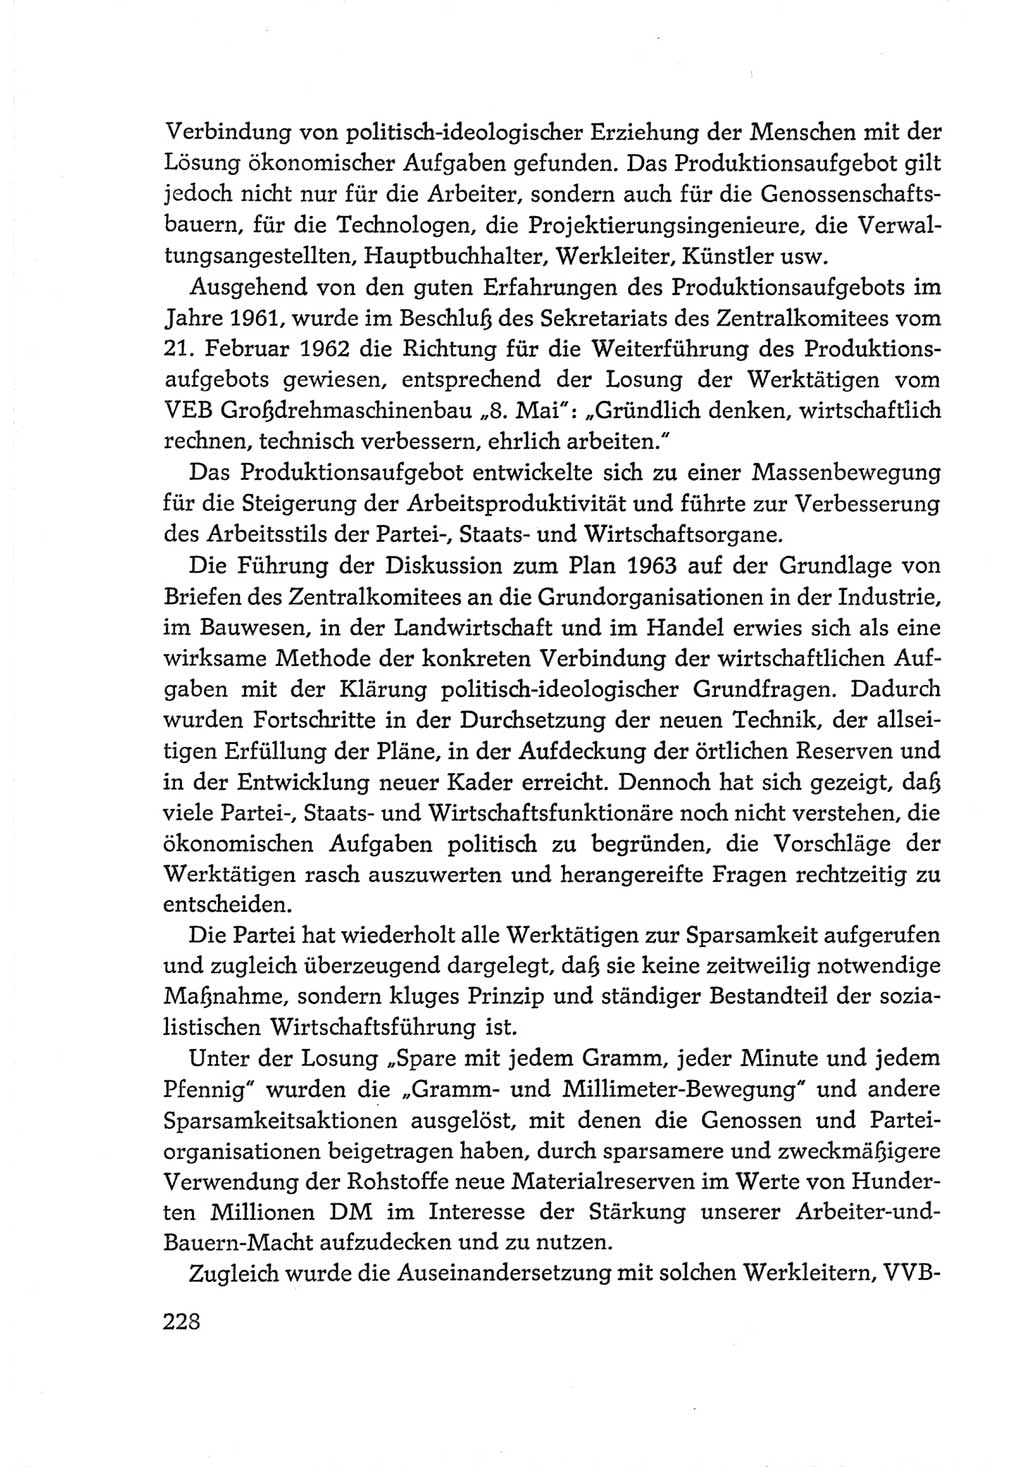 Protokoll der Verhandlungen des Ⅵ. Parteitages der Sozialistischen Einheitspartei Deutschlands (SED) [Deutsche Demokratische Republik (DDR)] 1963, Band Ⅳ, Seite 228 (Prot. Verh. Ⅵ. PT SED DDR 1963, Bd. Ⅳ, S. 228)